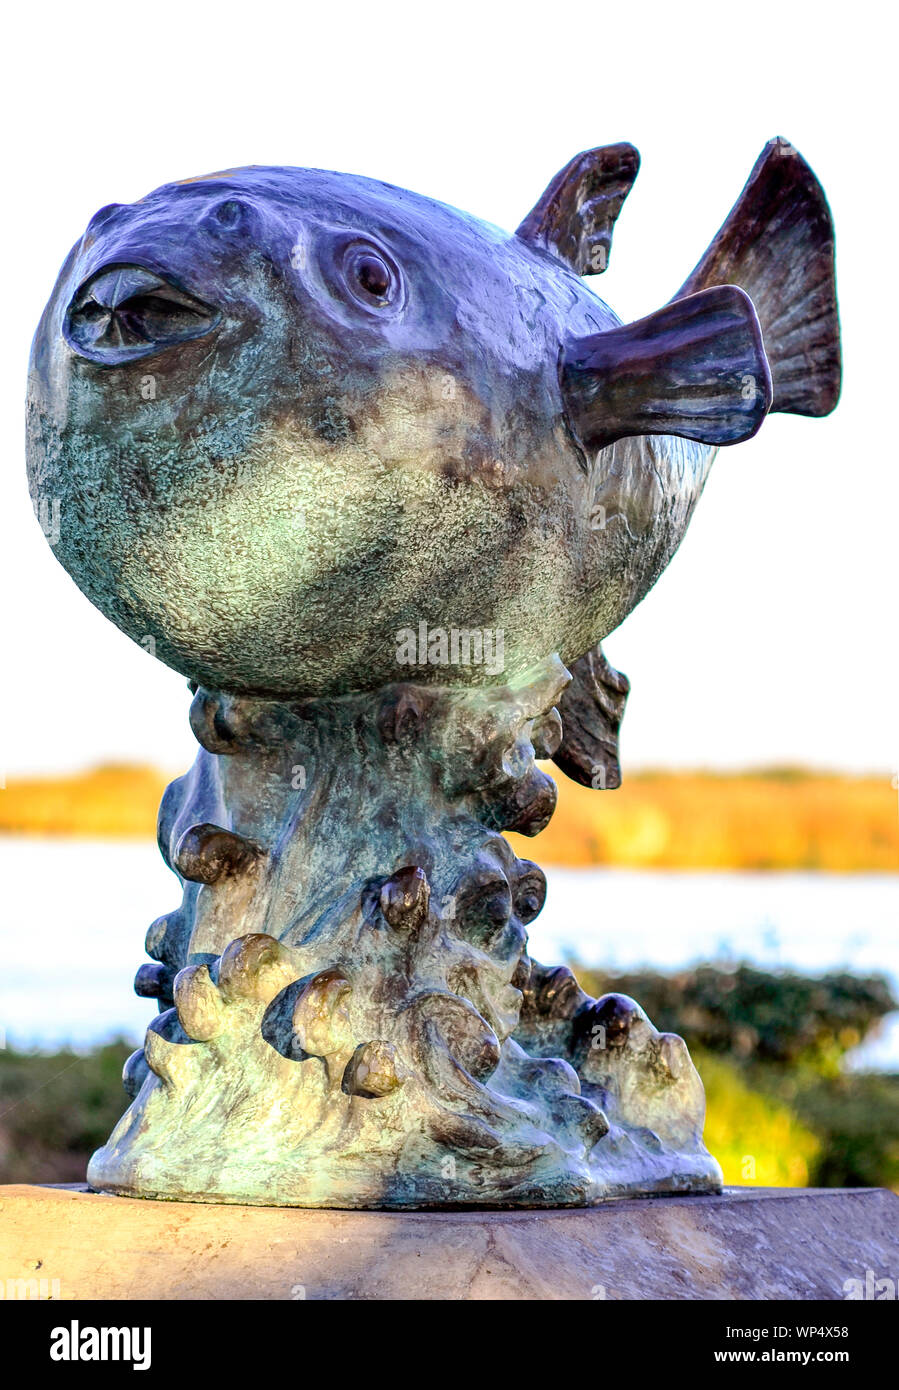 La scultura in bronzo di un pesce fugu, un dono dalla città sorella Shiminoseki, Giappone a Pittsburg, California USA. San Joaquin River in background. Foto Stock